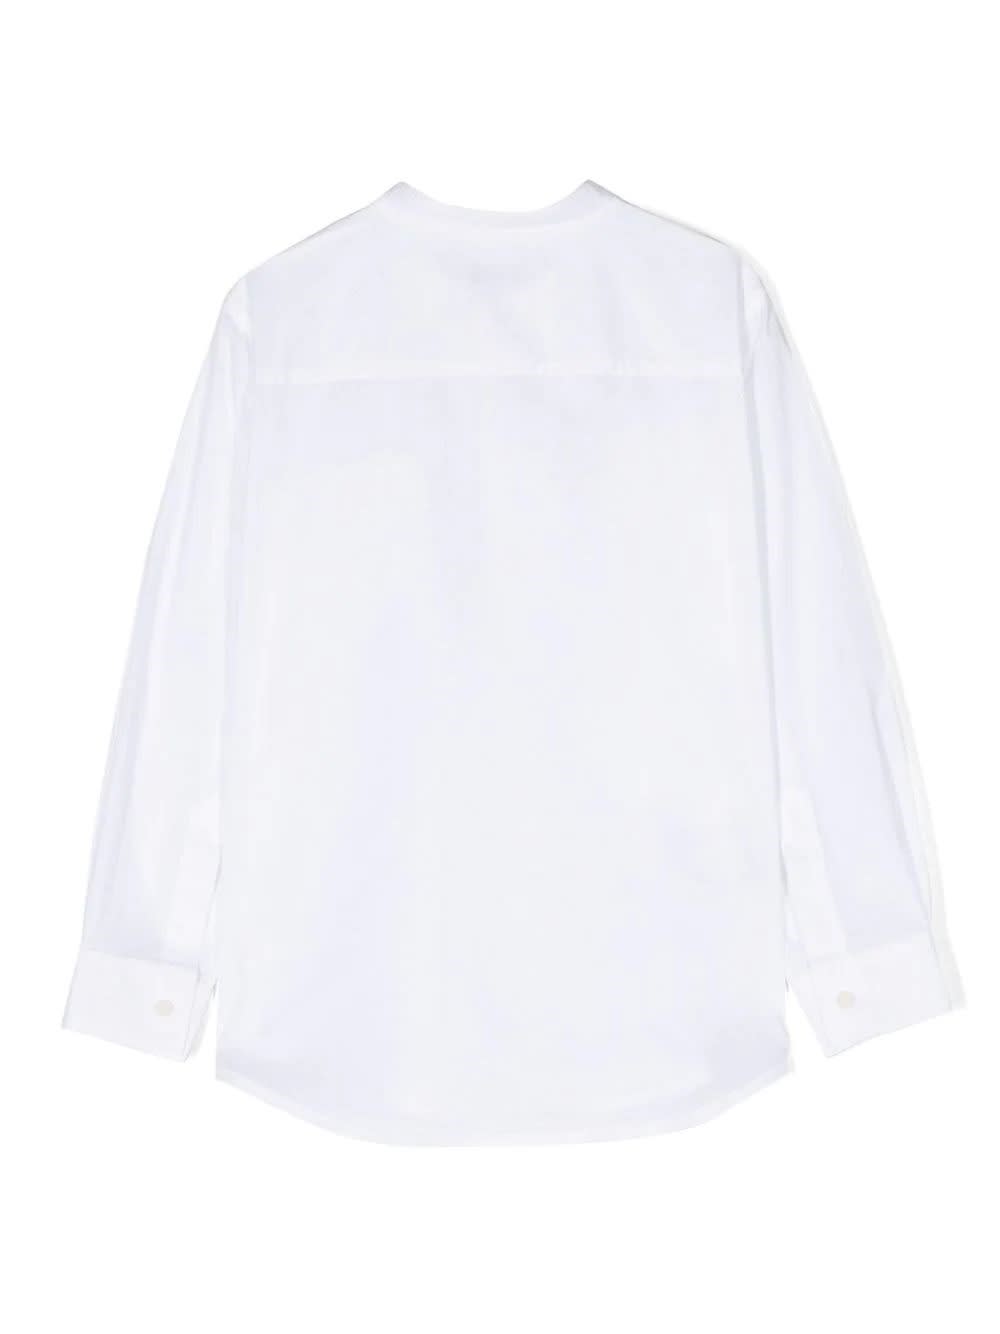 Il Gufo Kids' White Cotton Shirt